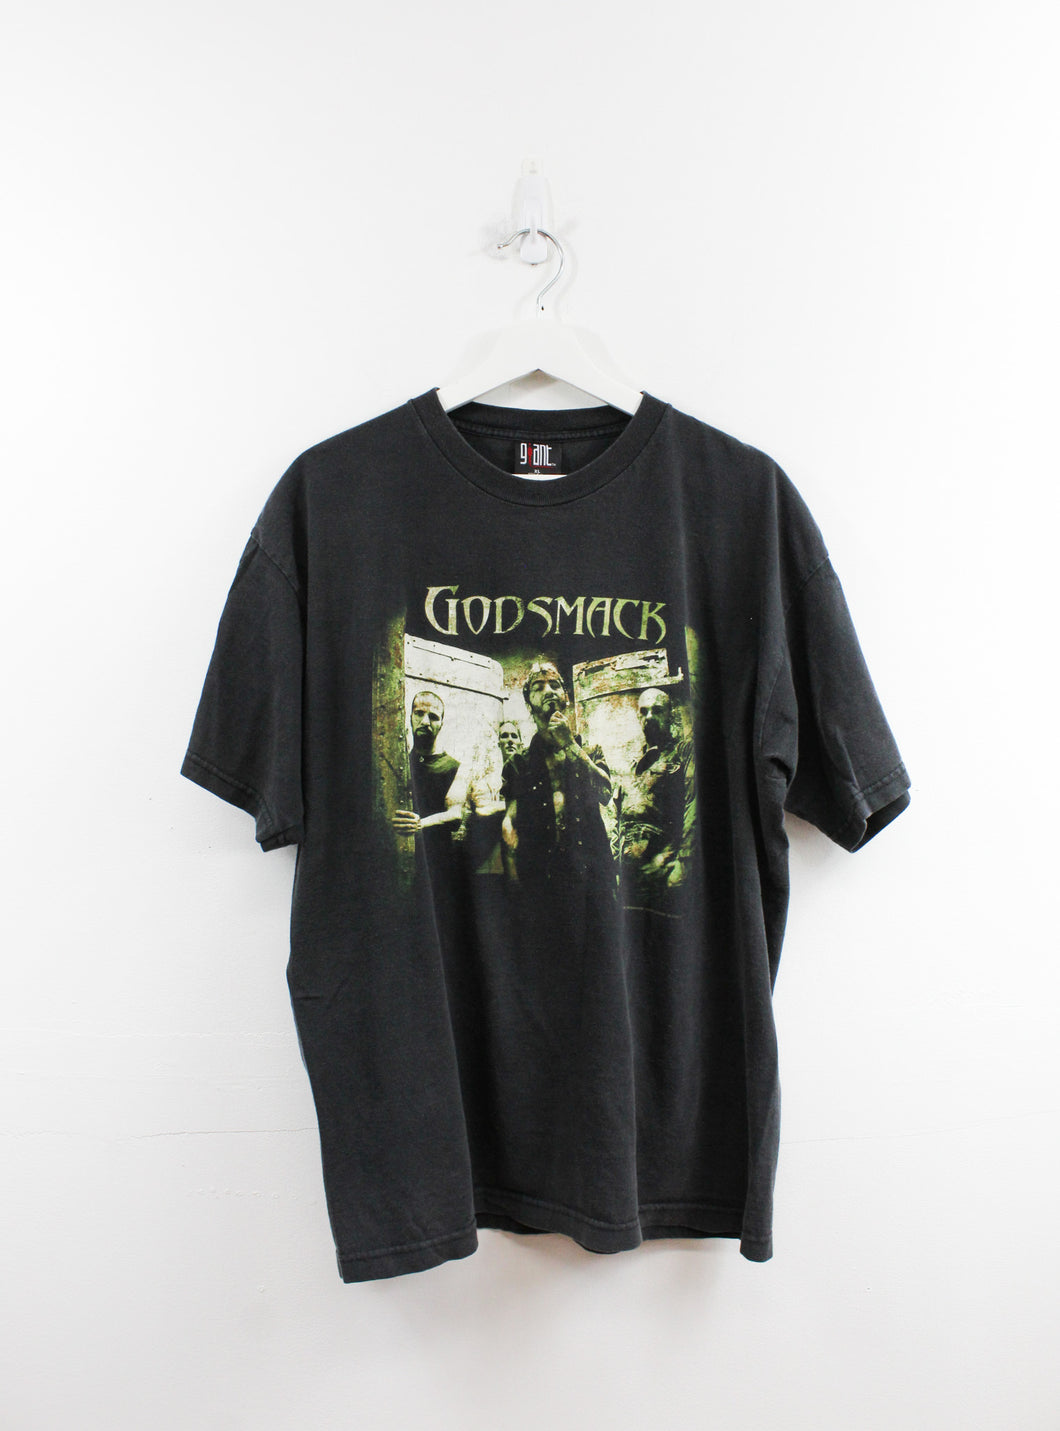 Vintage 2000 Godsmack Giant Tag Tour Tee